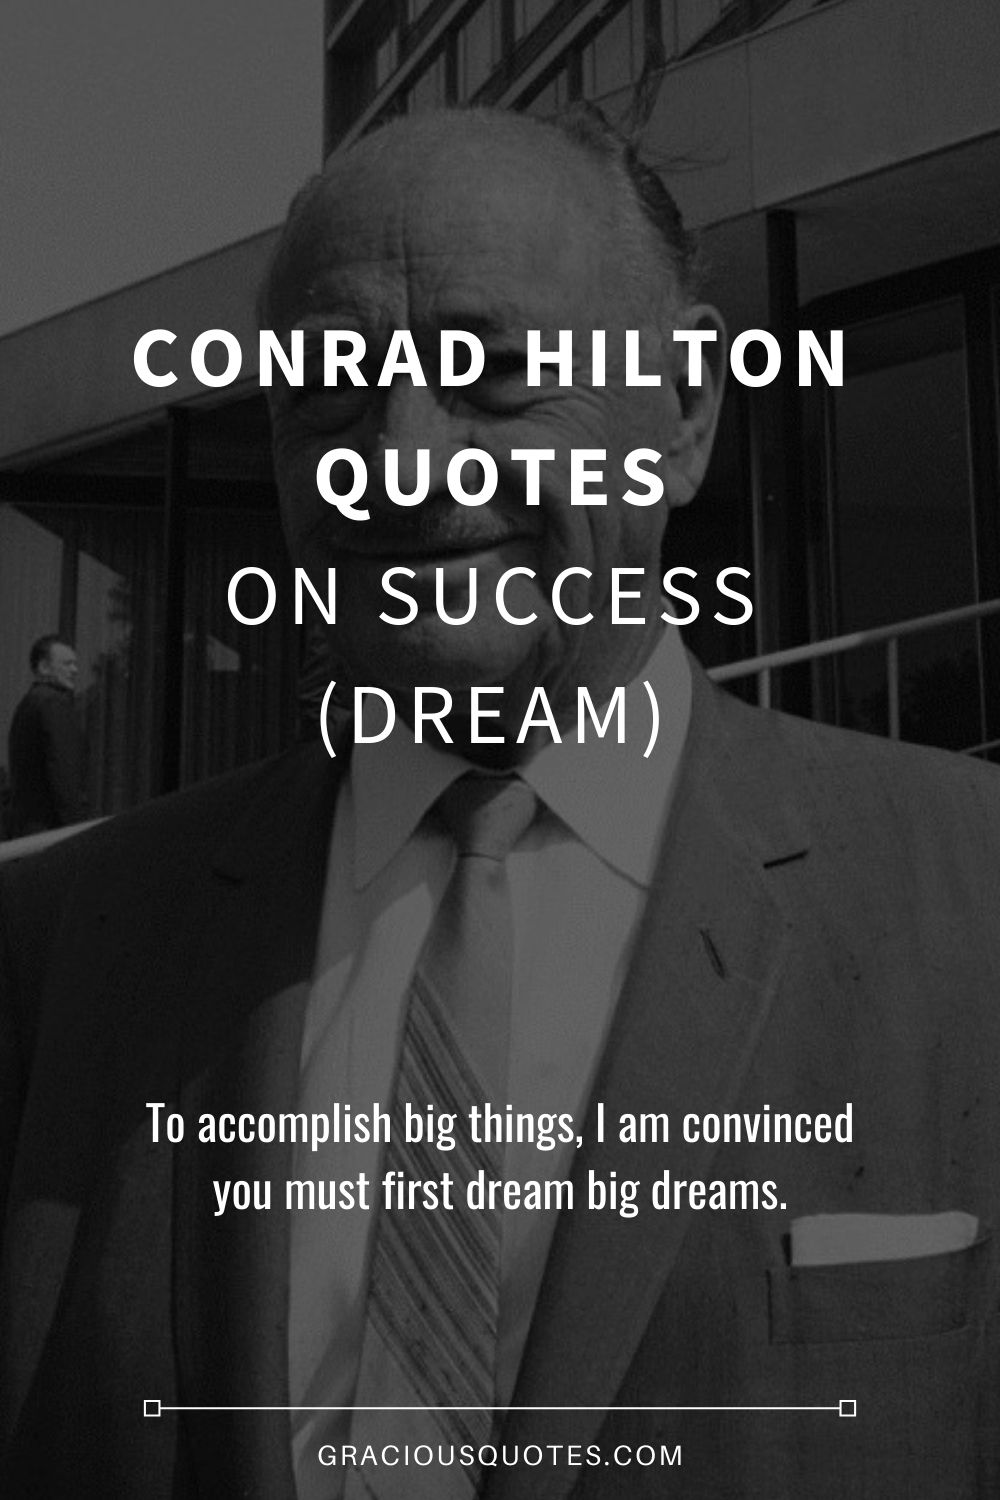 Conrad Hilton Quotes on Success (DREAM) - Gracious Quotes